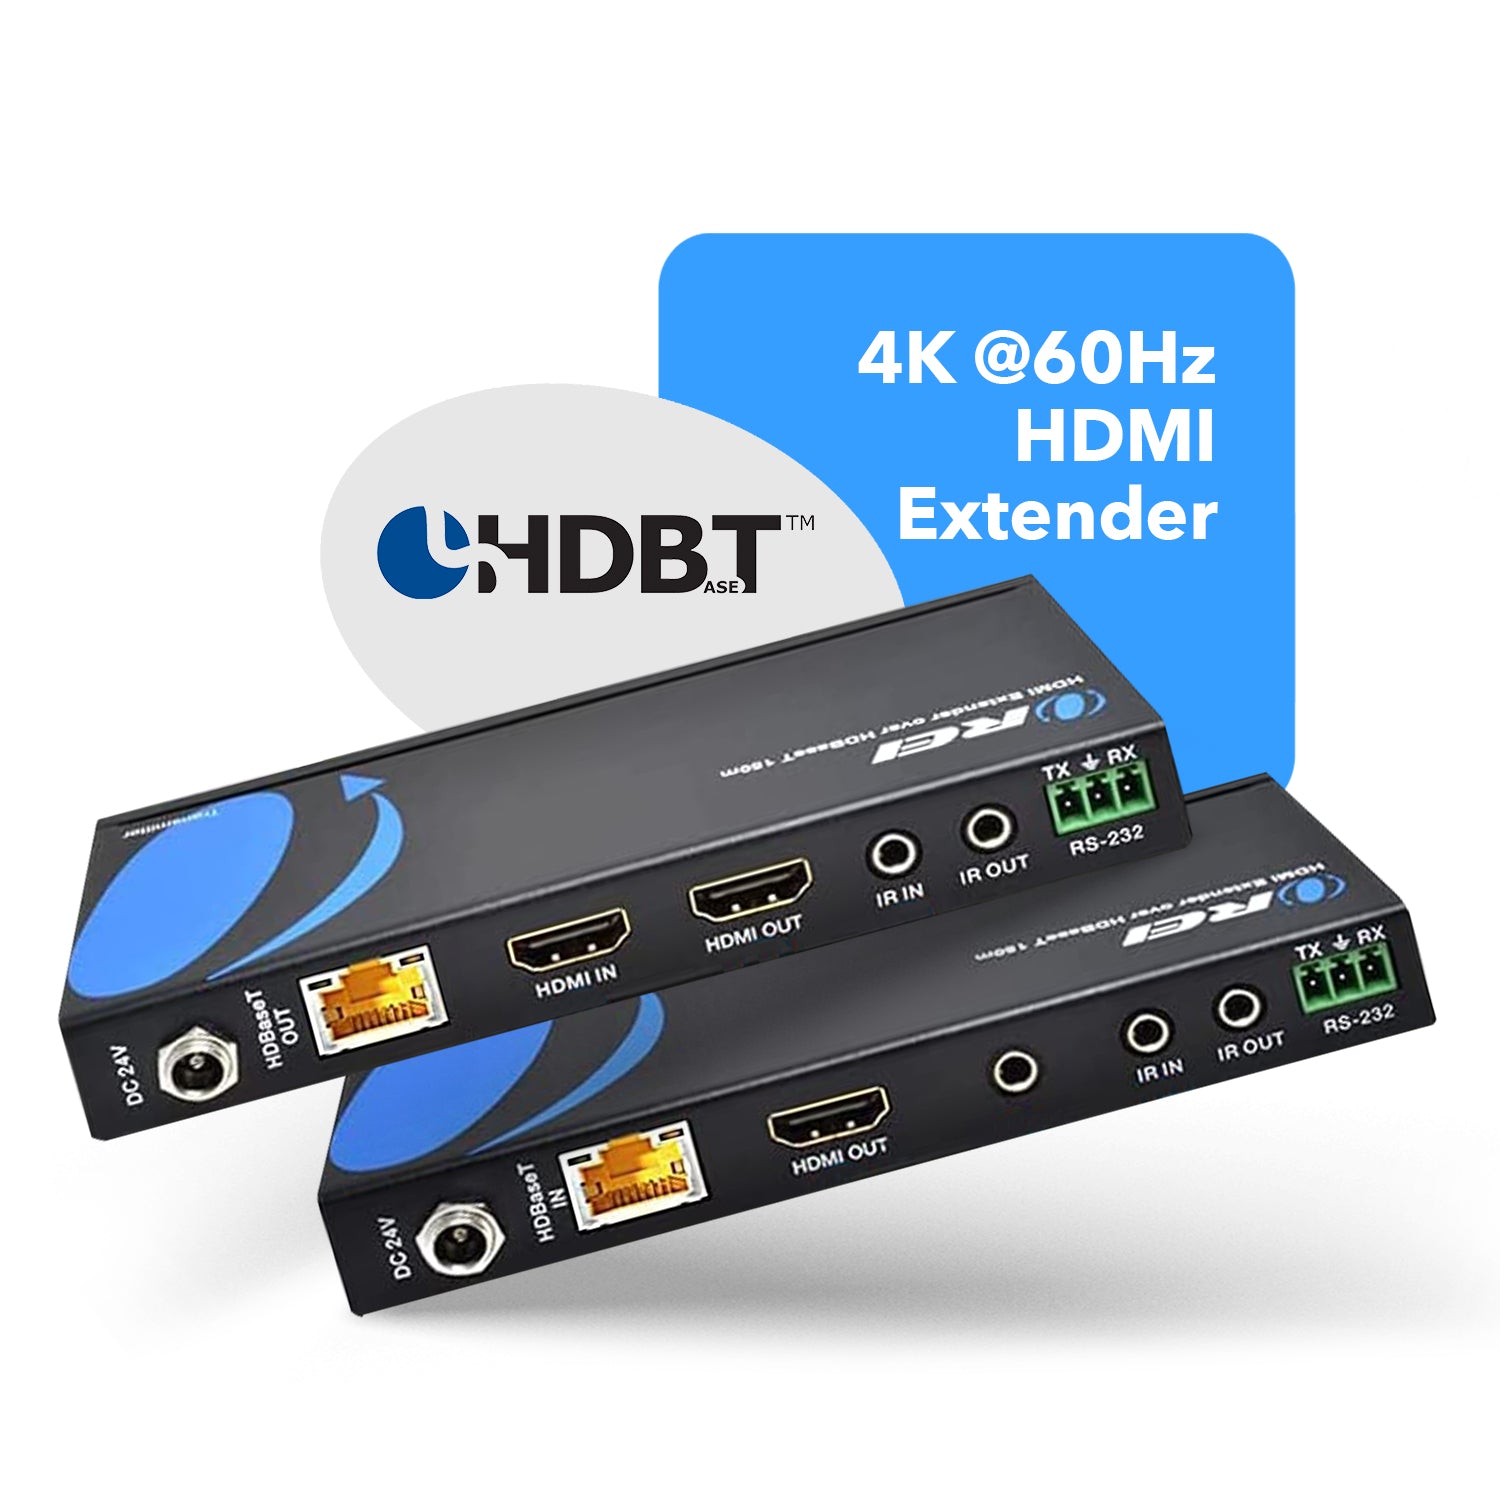 OREI HDBaseT 4K 60Hz HDMI Extender over Cat5e/6 Ethernet LAN - Up 115 Ft - IR, CEC, RS-232, PoC | OREI